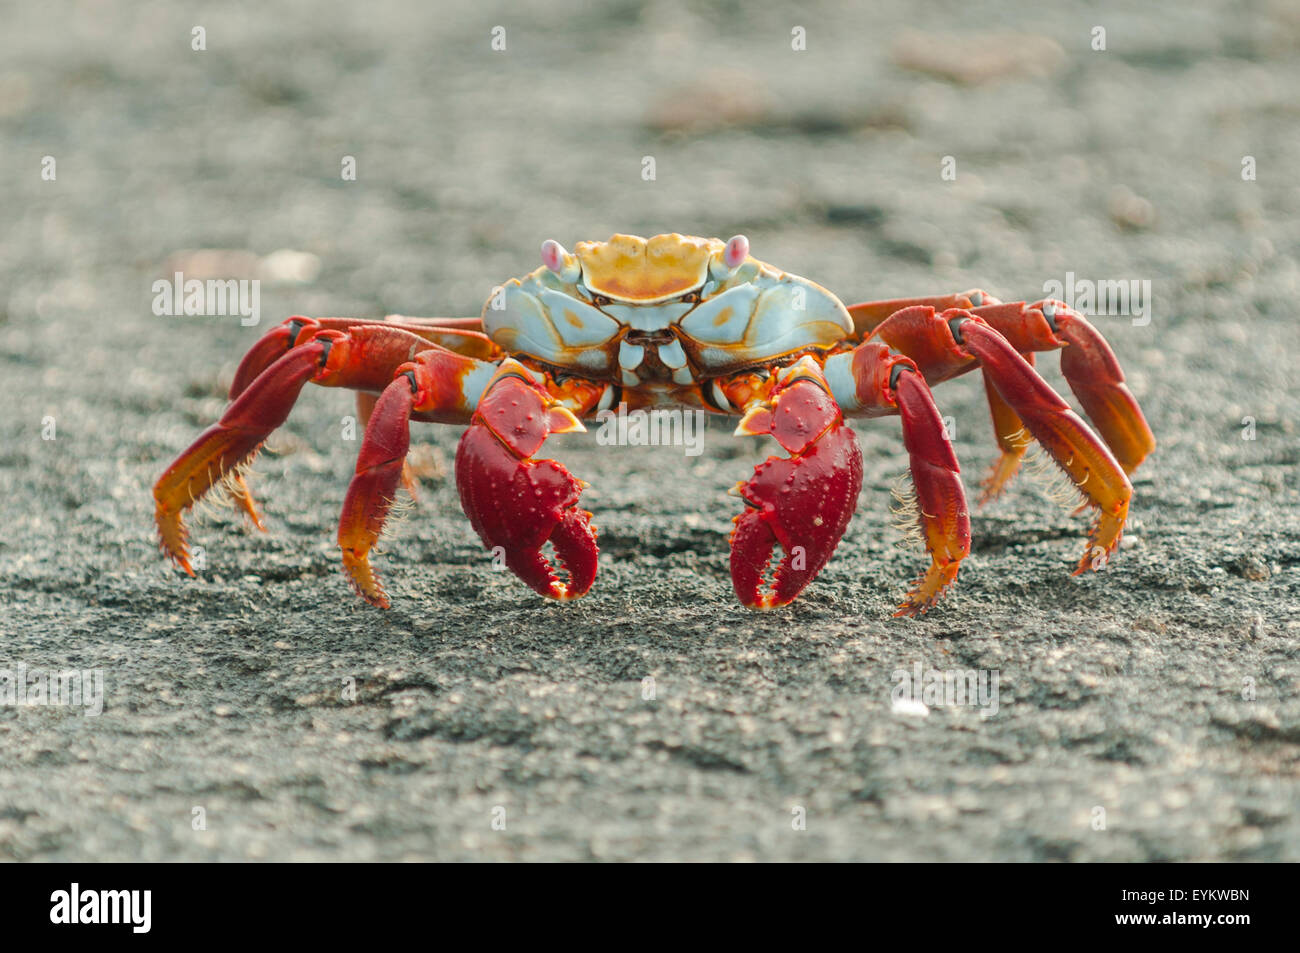 Grapsus grapsus, Sally Lightfoot Crab, Fernandina Island, îles Galapagos, Equateur Banque D'Images